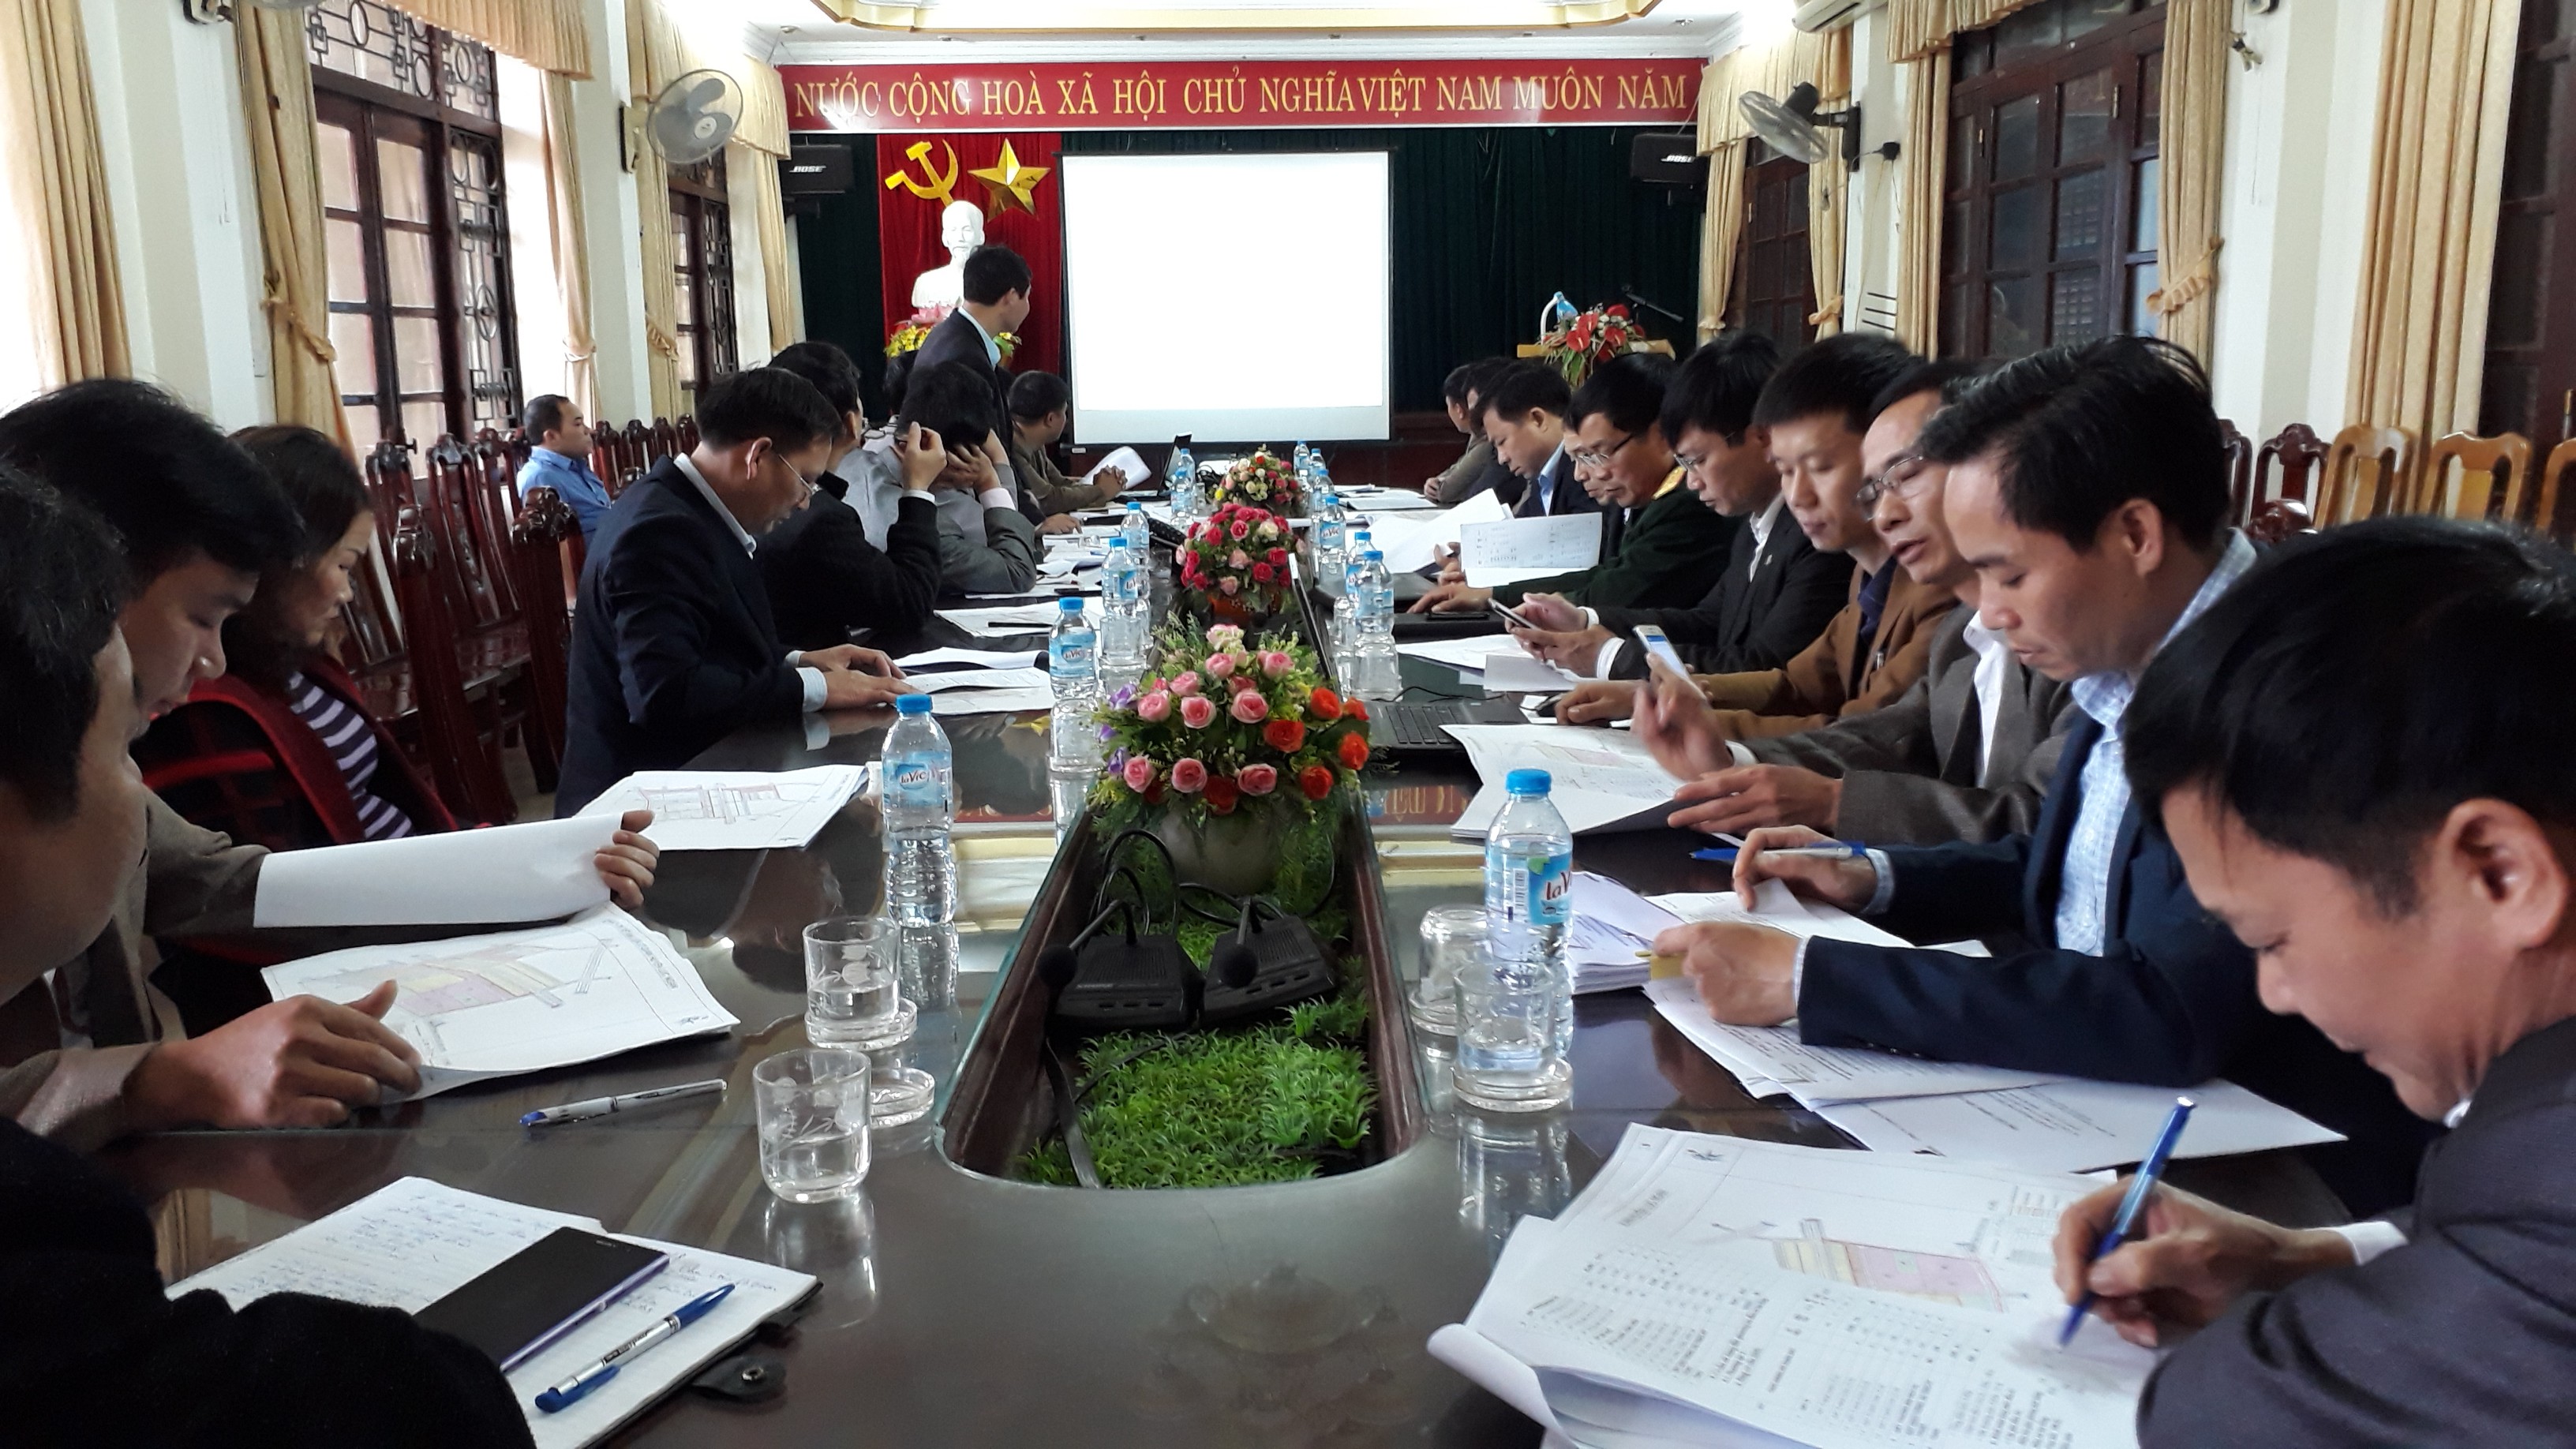 Hội nghị báo cáo quy hoạch xây dựng khu liên cơ quan huyện Lục Ngạn